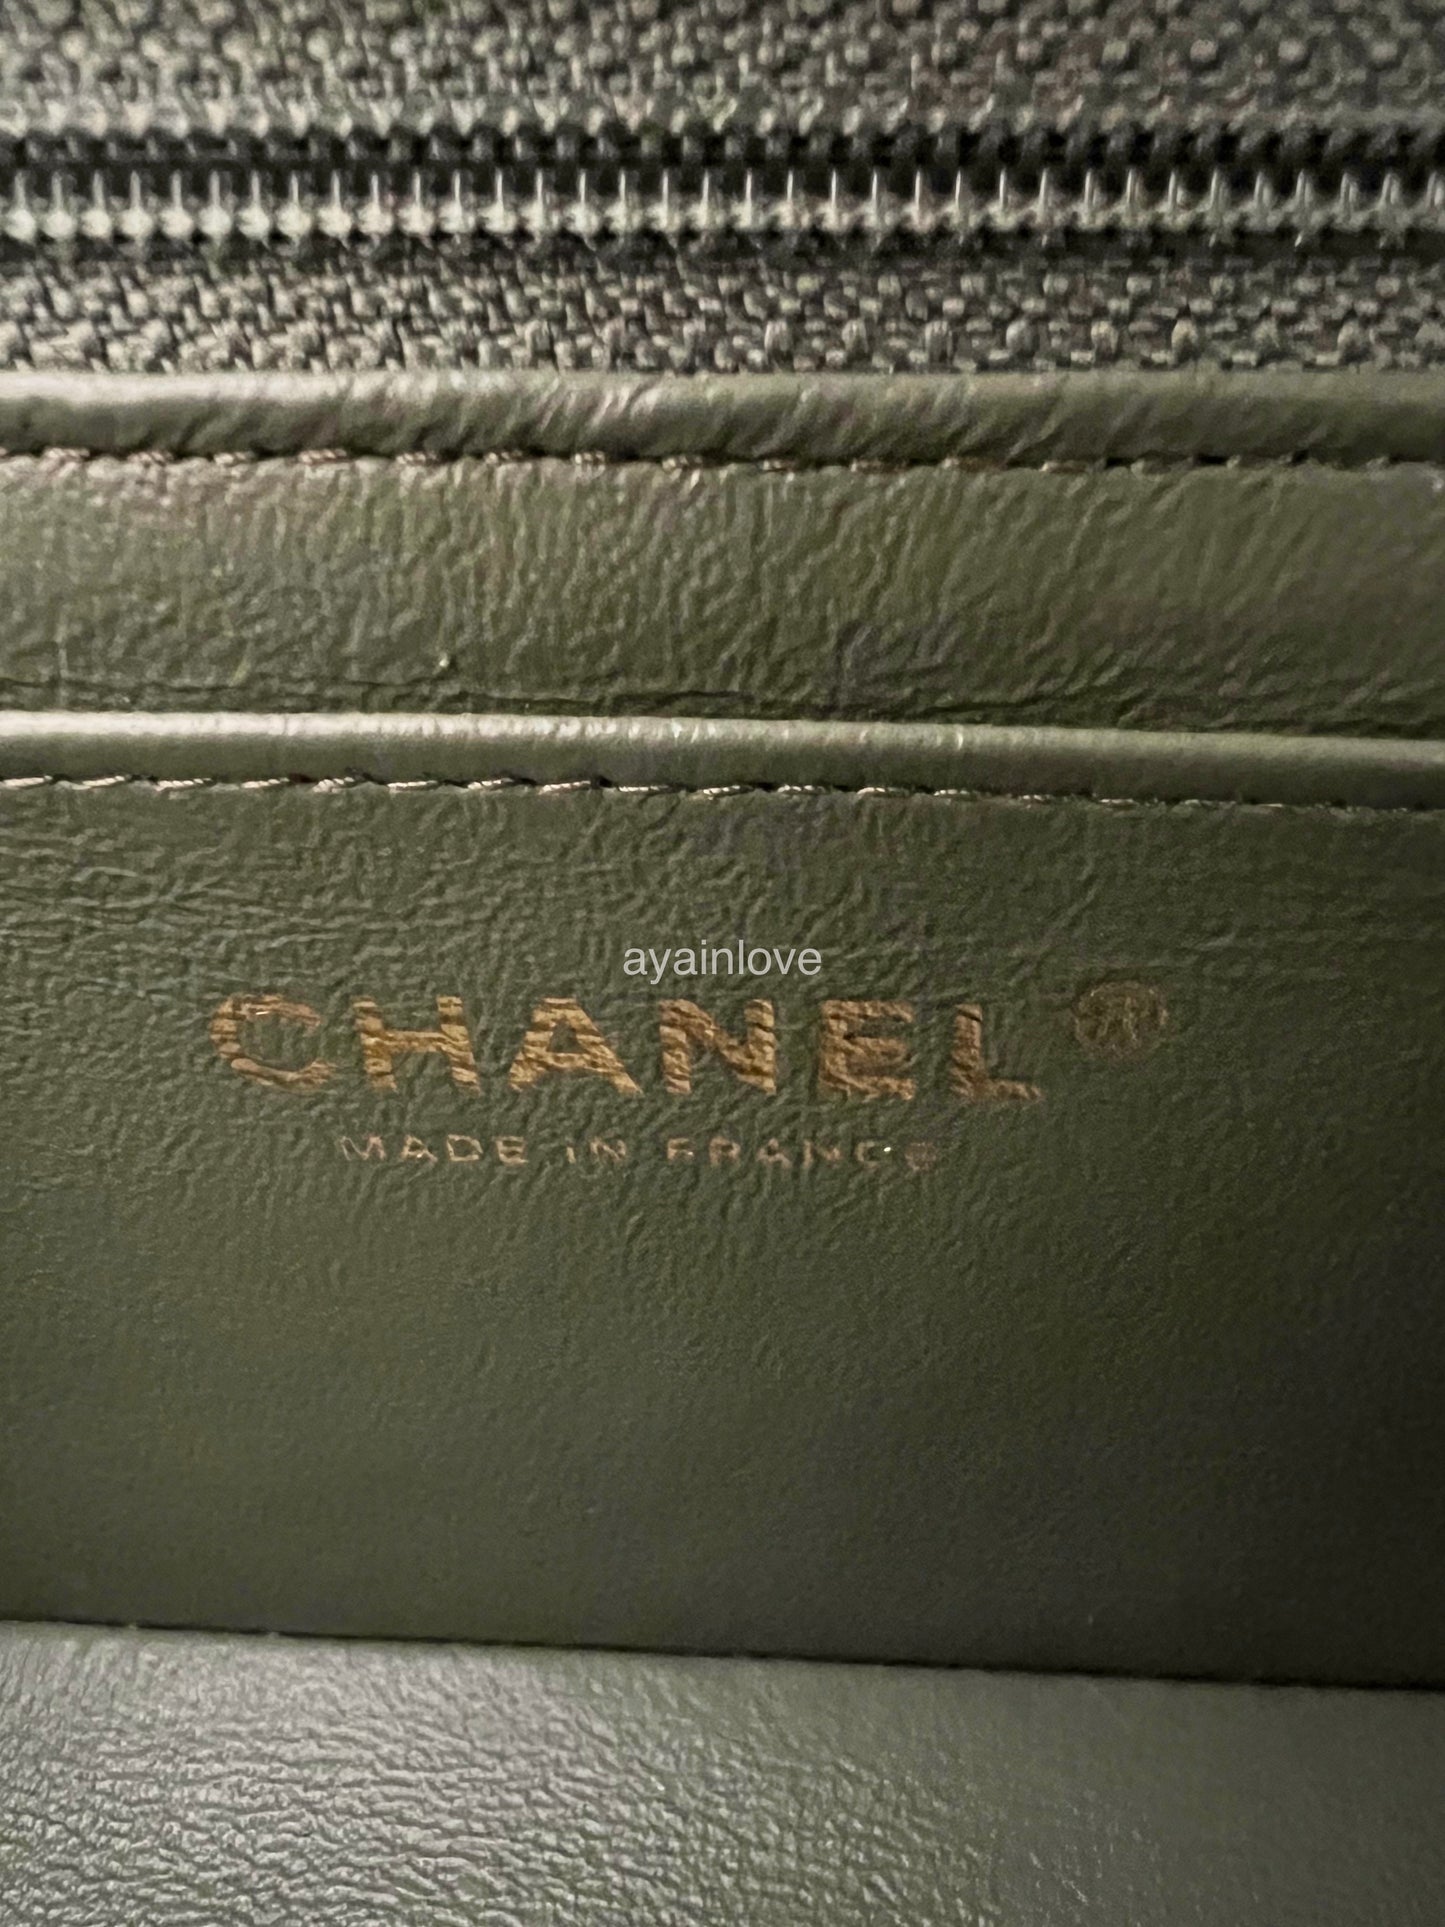 CHANEL 18C Iridescent Green Caviar Rectangular Mini Flap Bag Brushed Gold Hardware